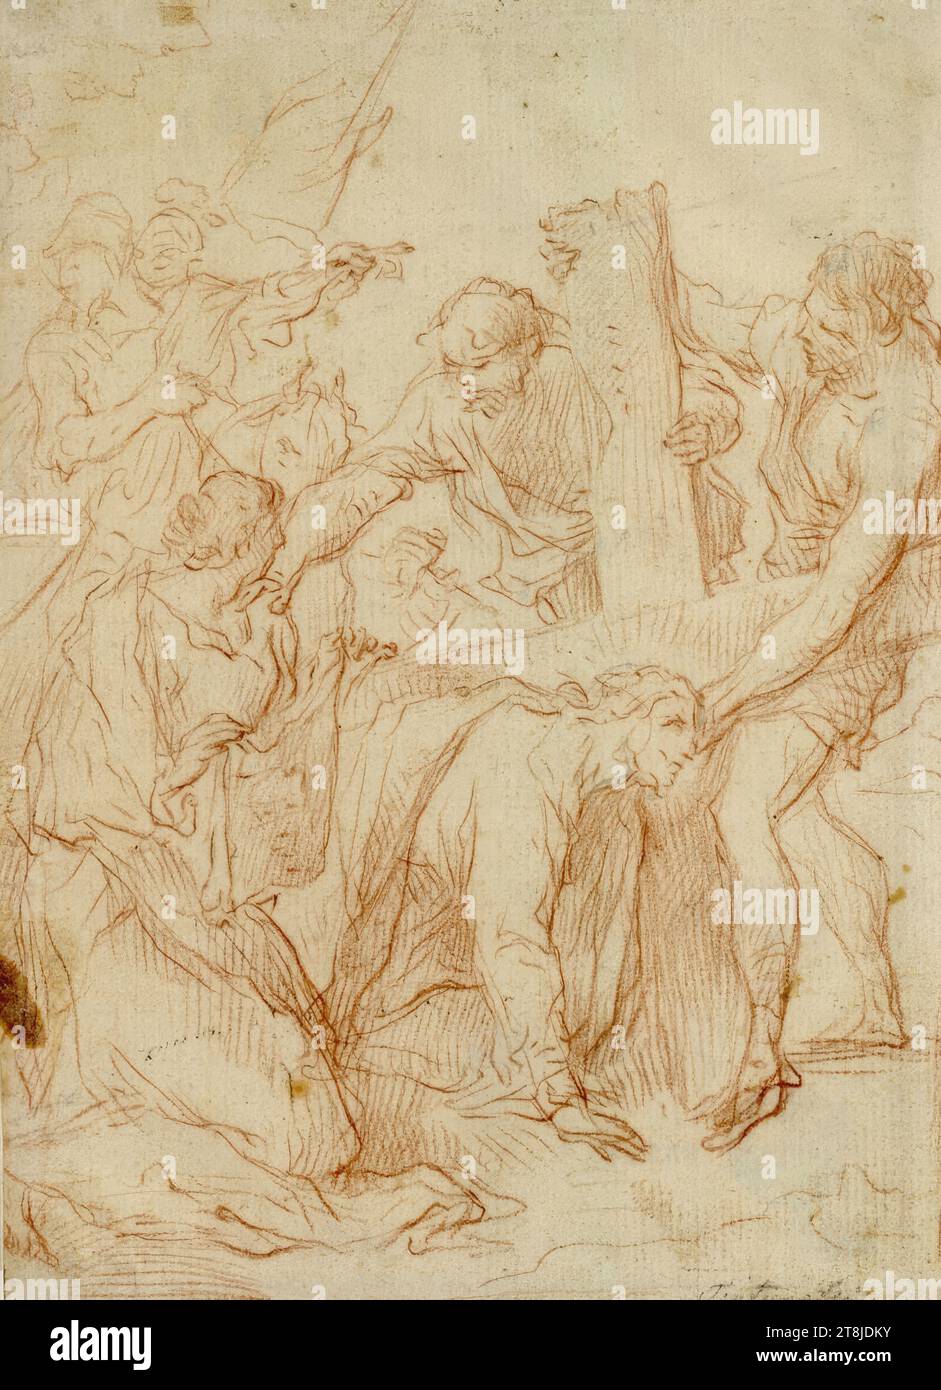 Portant la Croix, autrichien, 18e siècle, dessin, craie rouge, 17,8 x 12,8 cm, Lanna, verso, en bas à droite au crayon 'Tintoretto' ; verso : '6 Banque D'Images